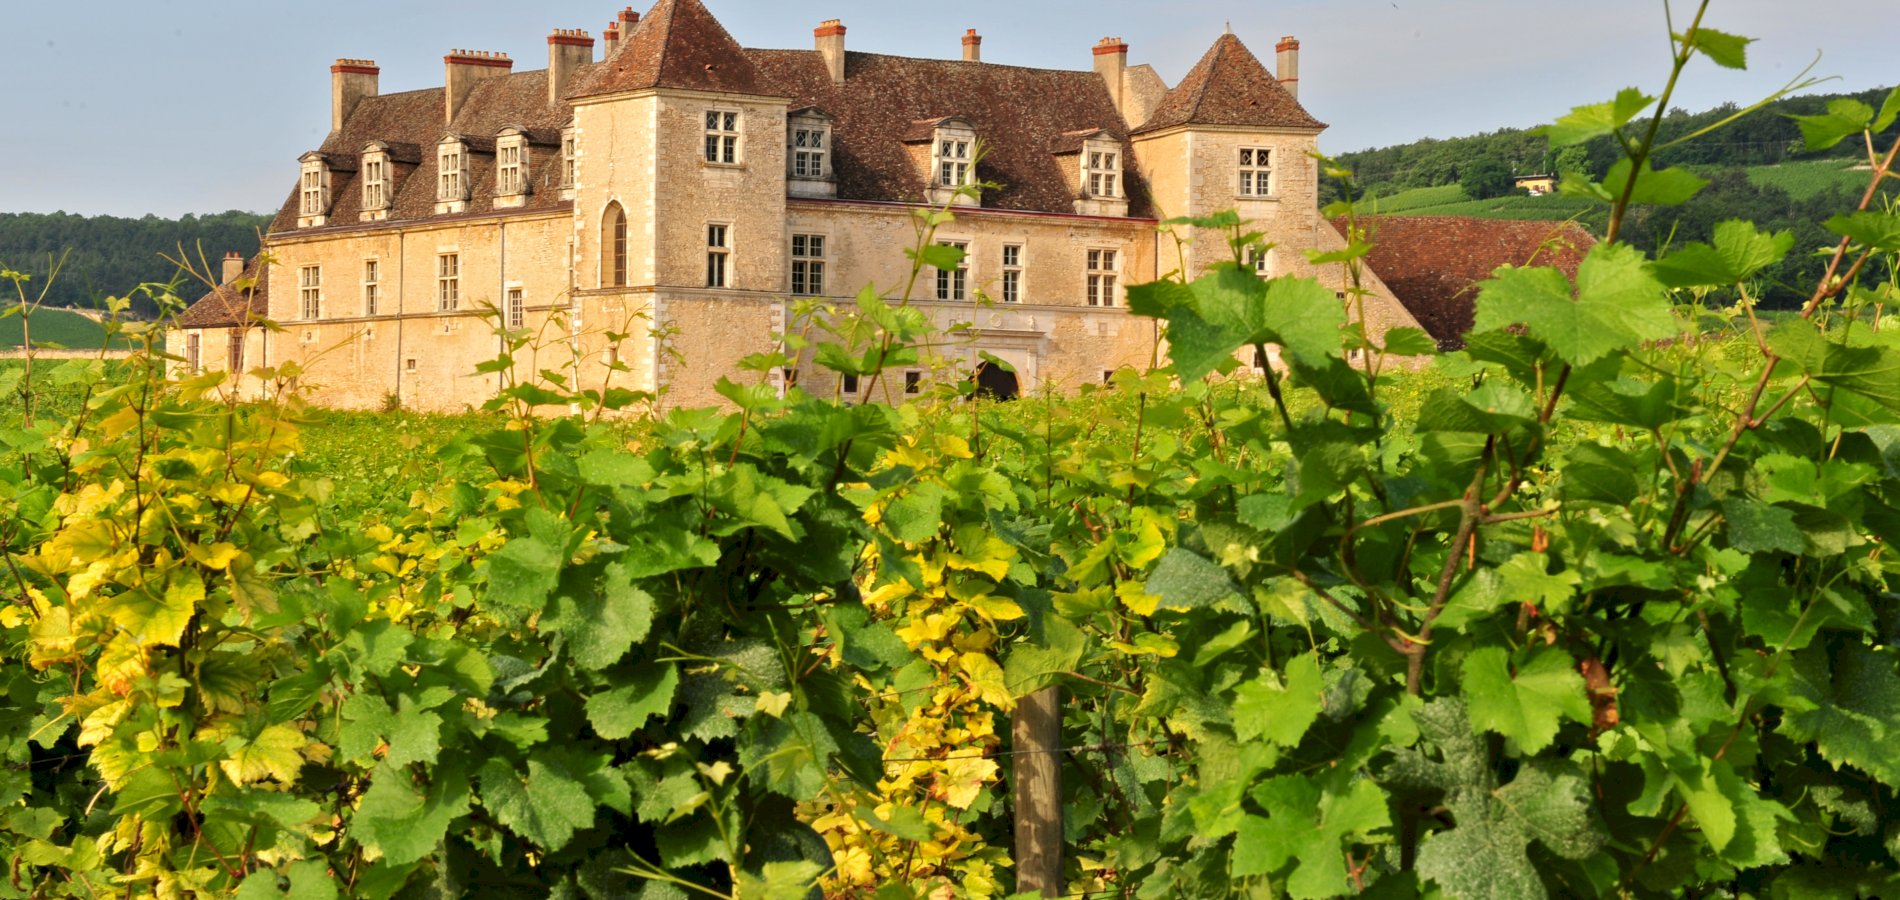 Ophorus Tours - A Private Burgundy Wine Tour  from Dijon to Côte de Nuits & Côte de Beaune 